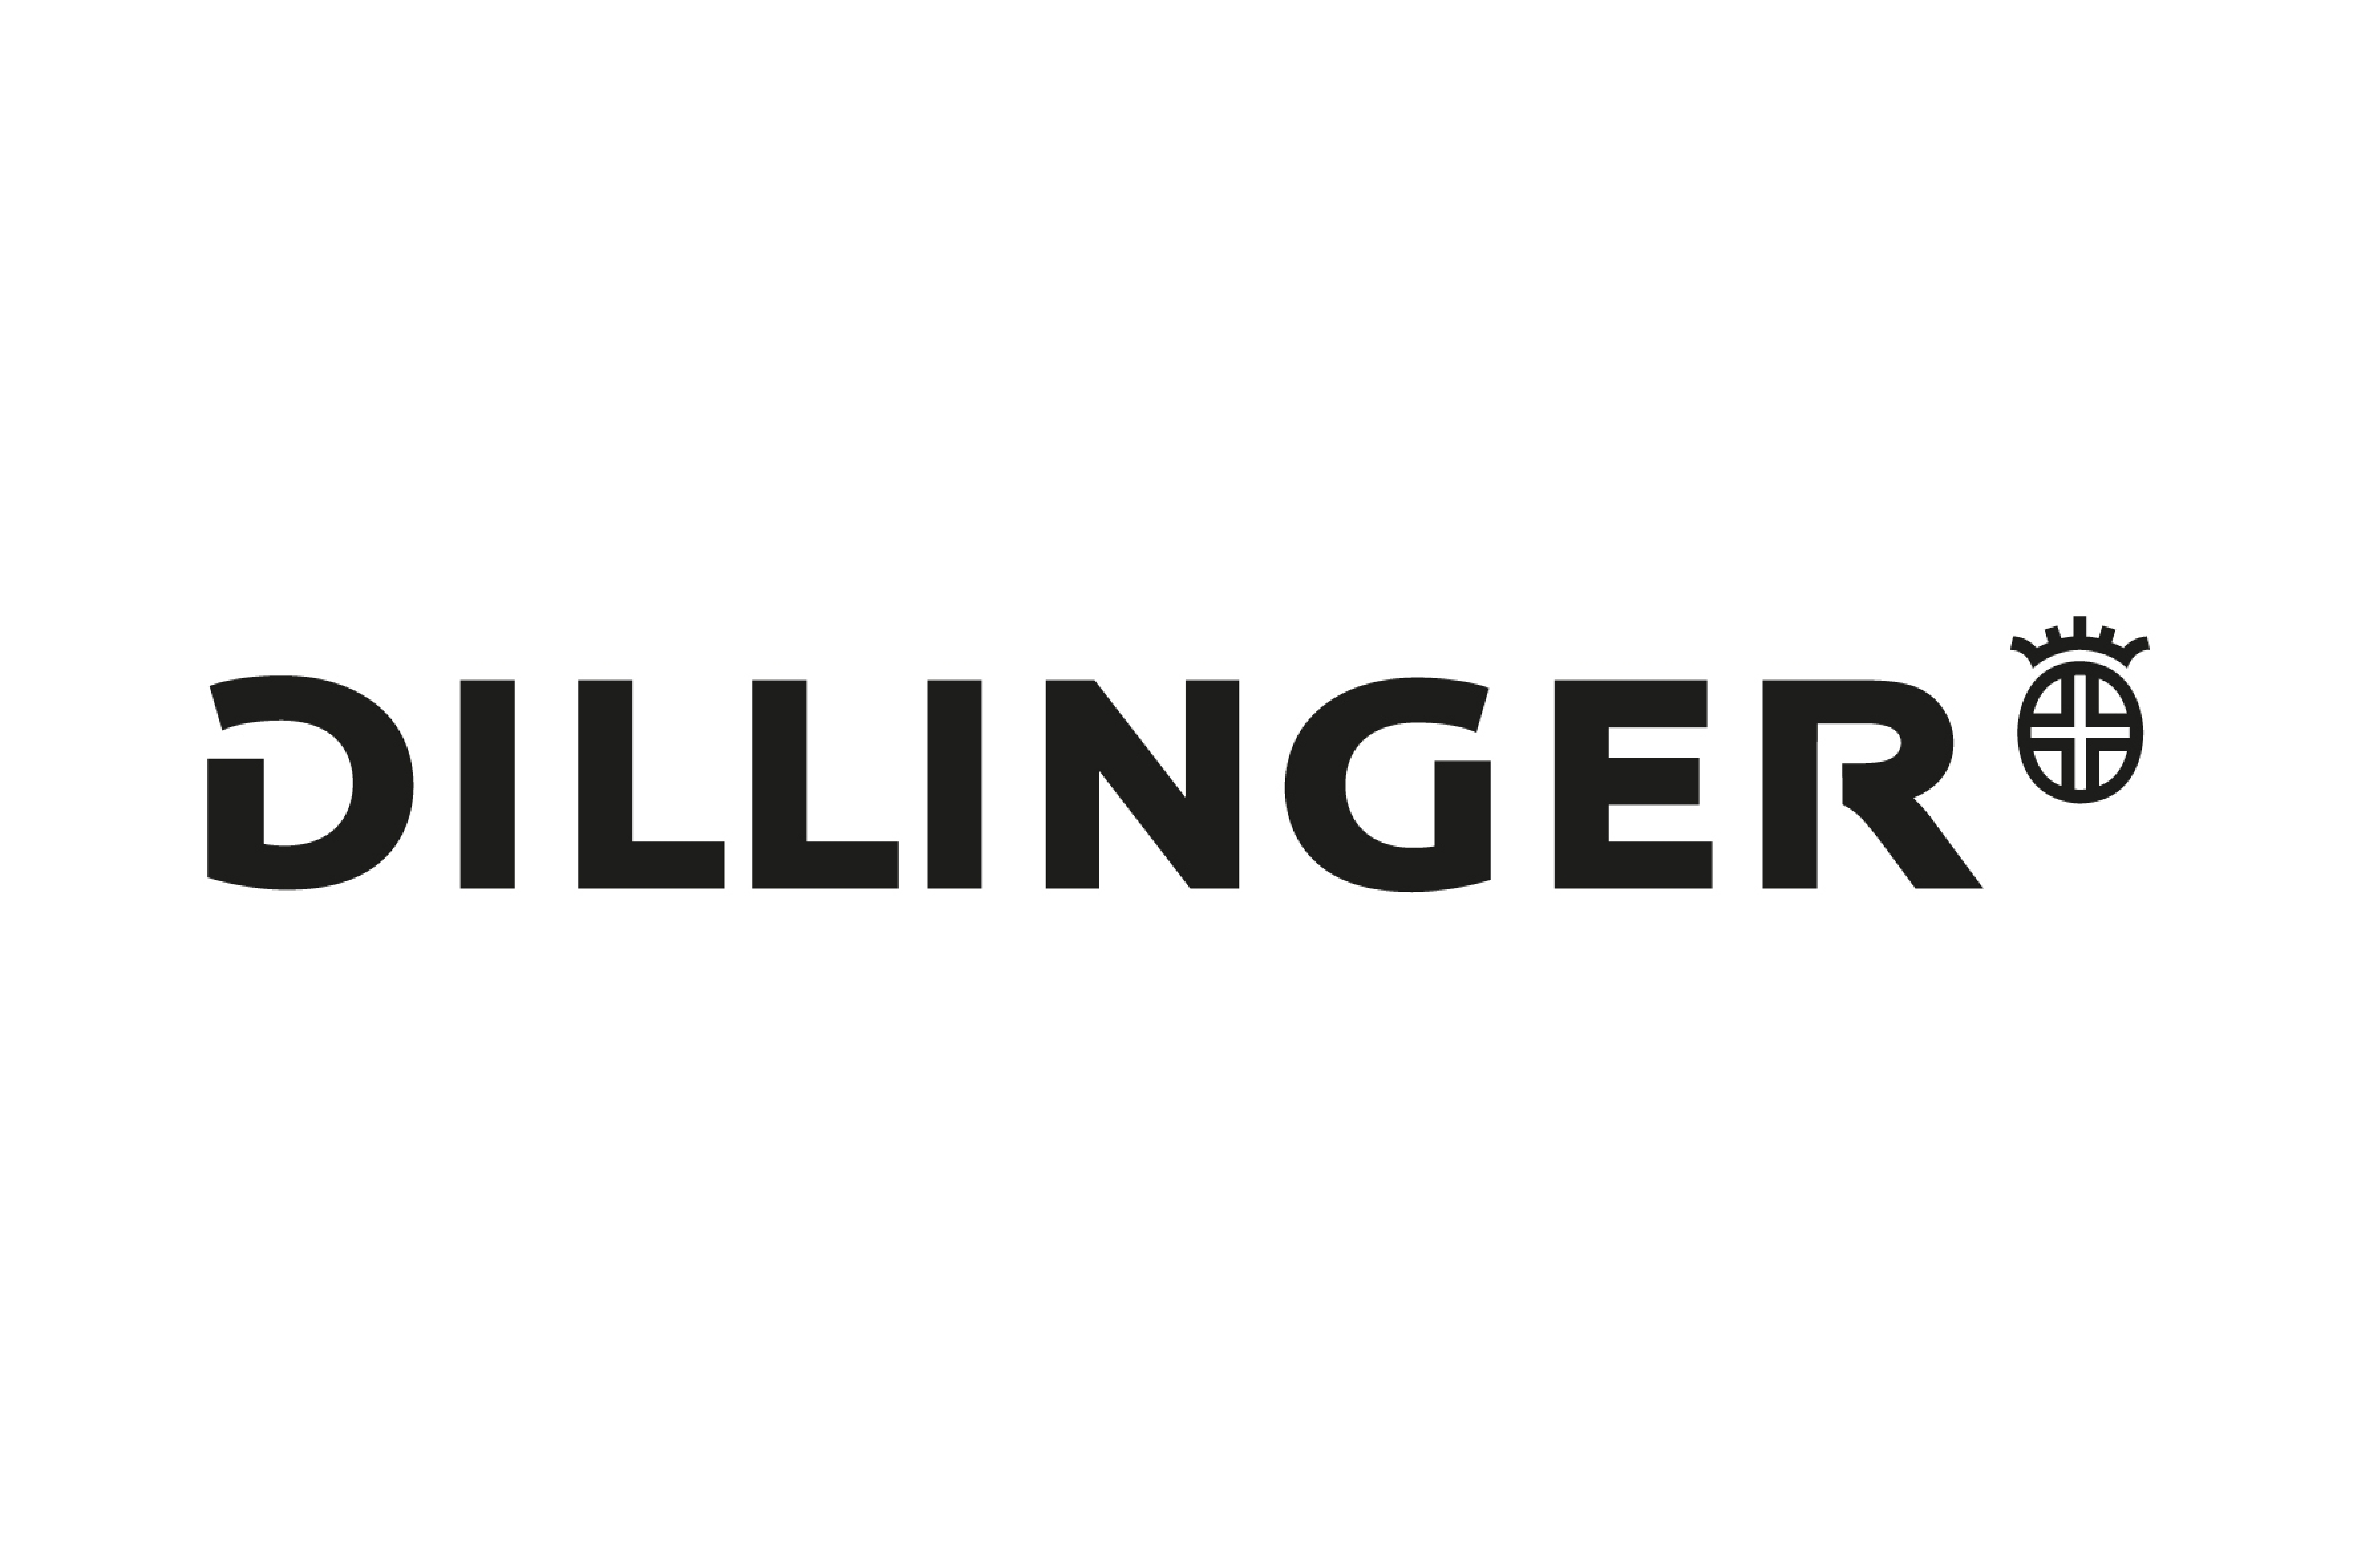 DILLINGER